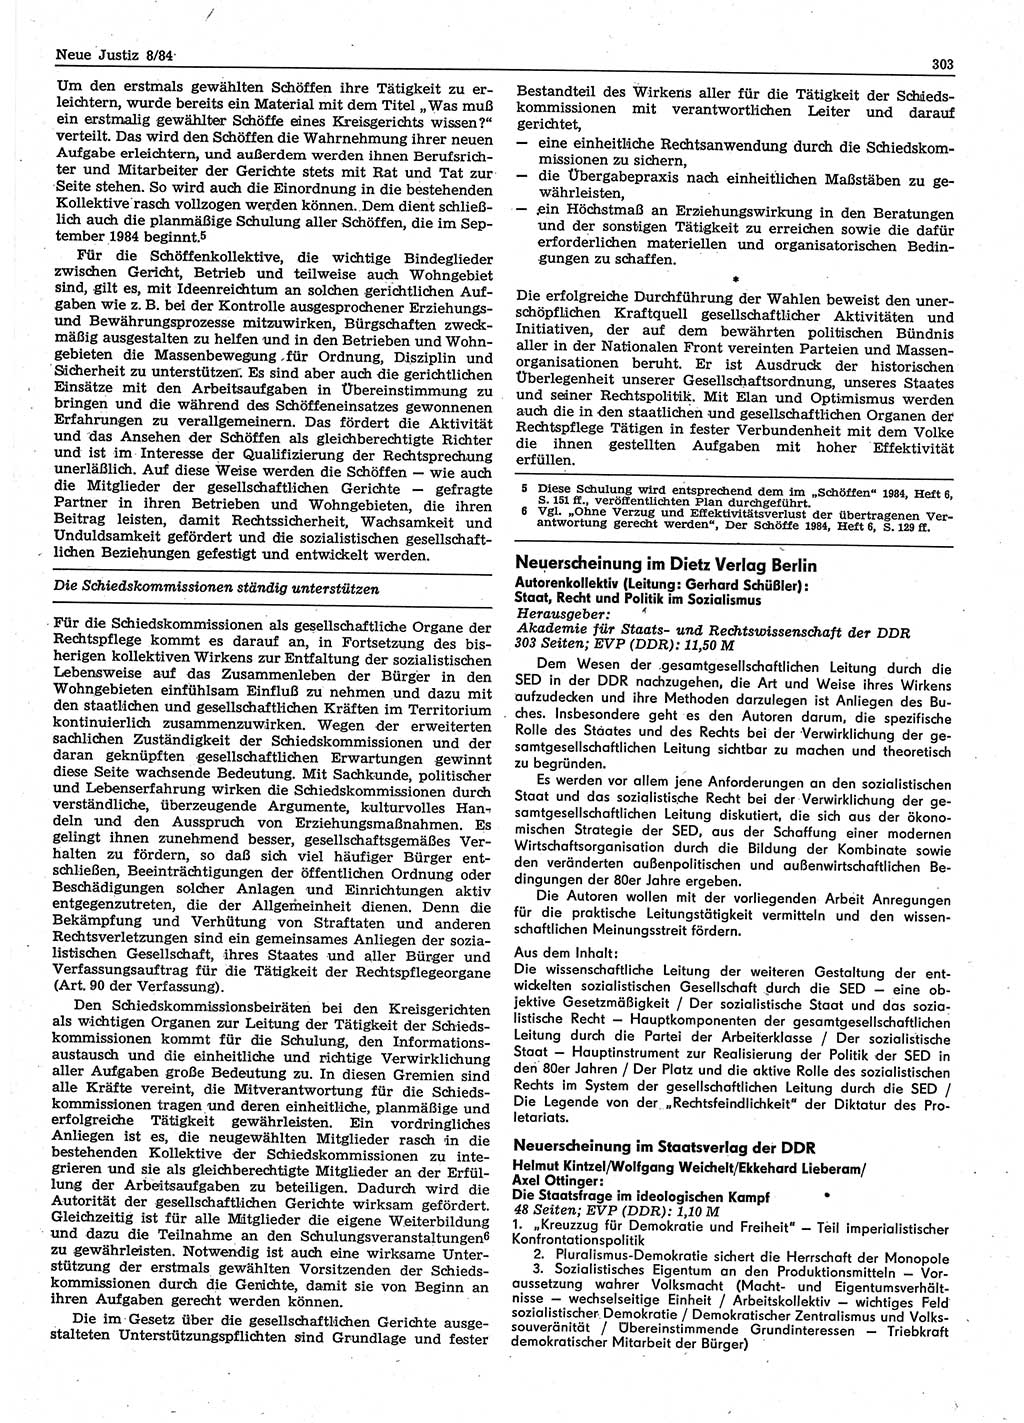 Neue Justiz (NJ), Zeitschrift für sozialistisches Recht und Gesetzlichkeit [Deutsche Demokratische Republik (DDR)], 38. Jahrgang 1984, Seite 303 (NJ DDR 1984, S. 303)